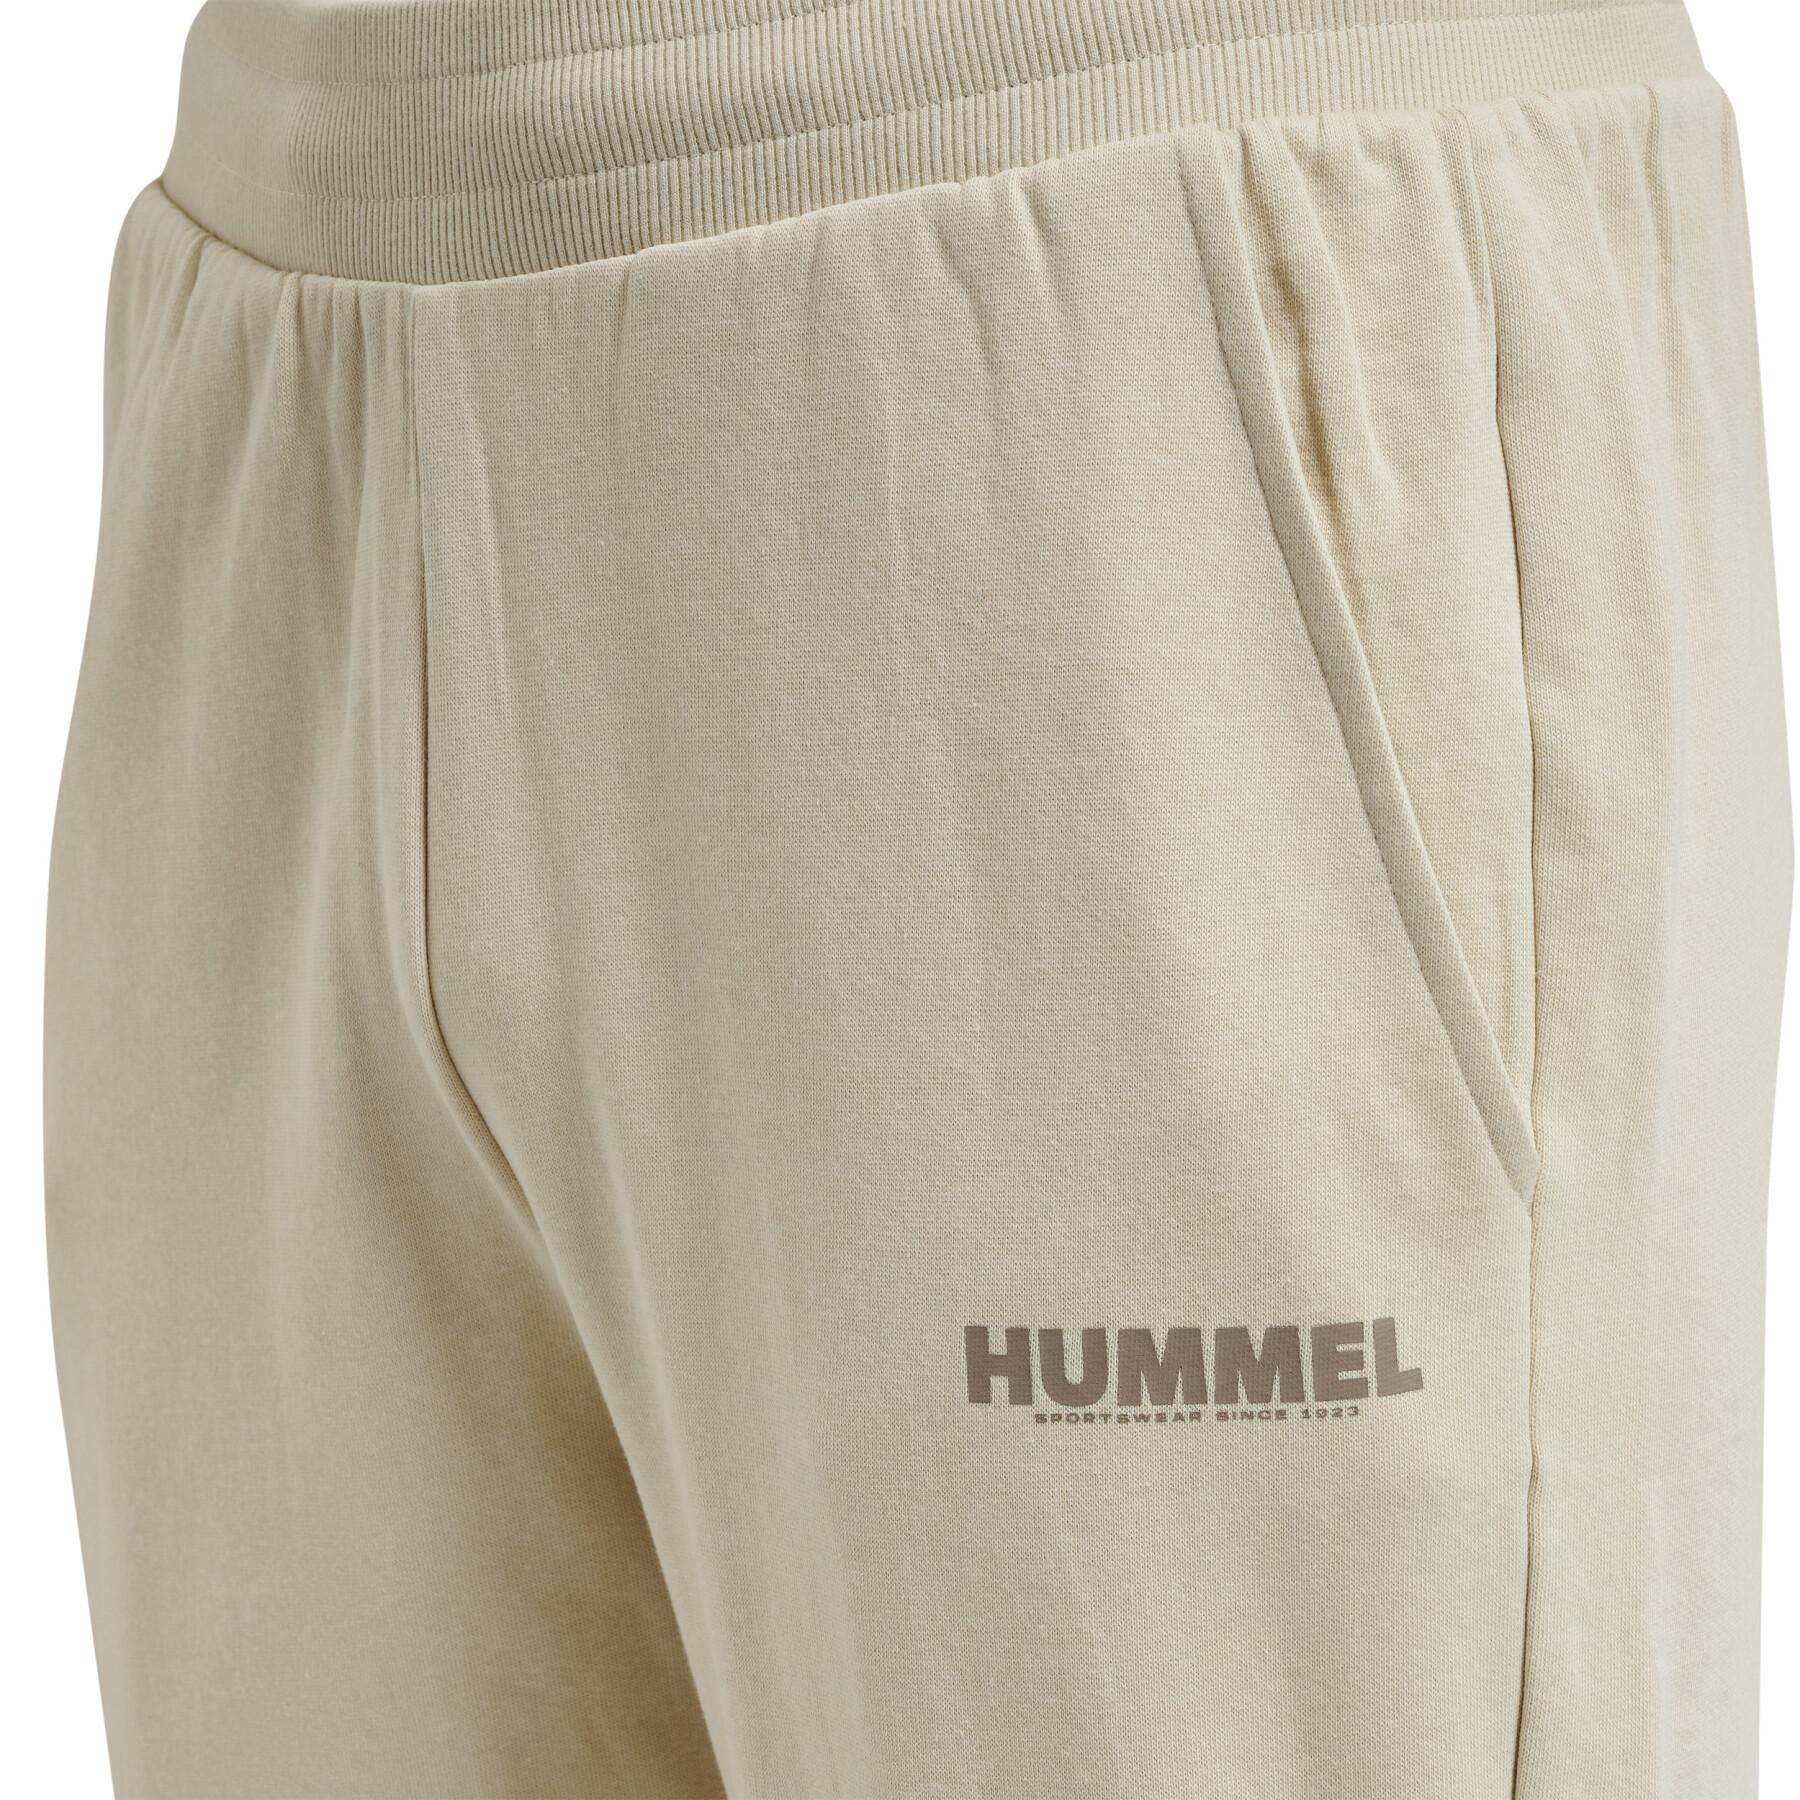 Pantalón de jogging cónico Hummel Legacy